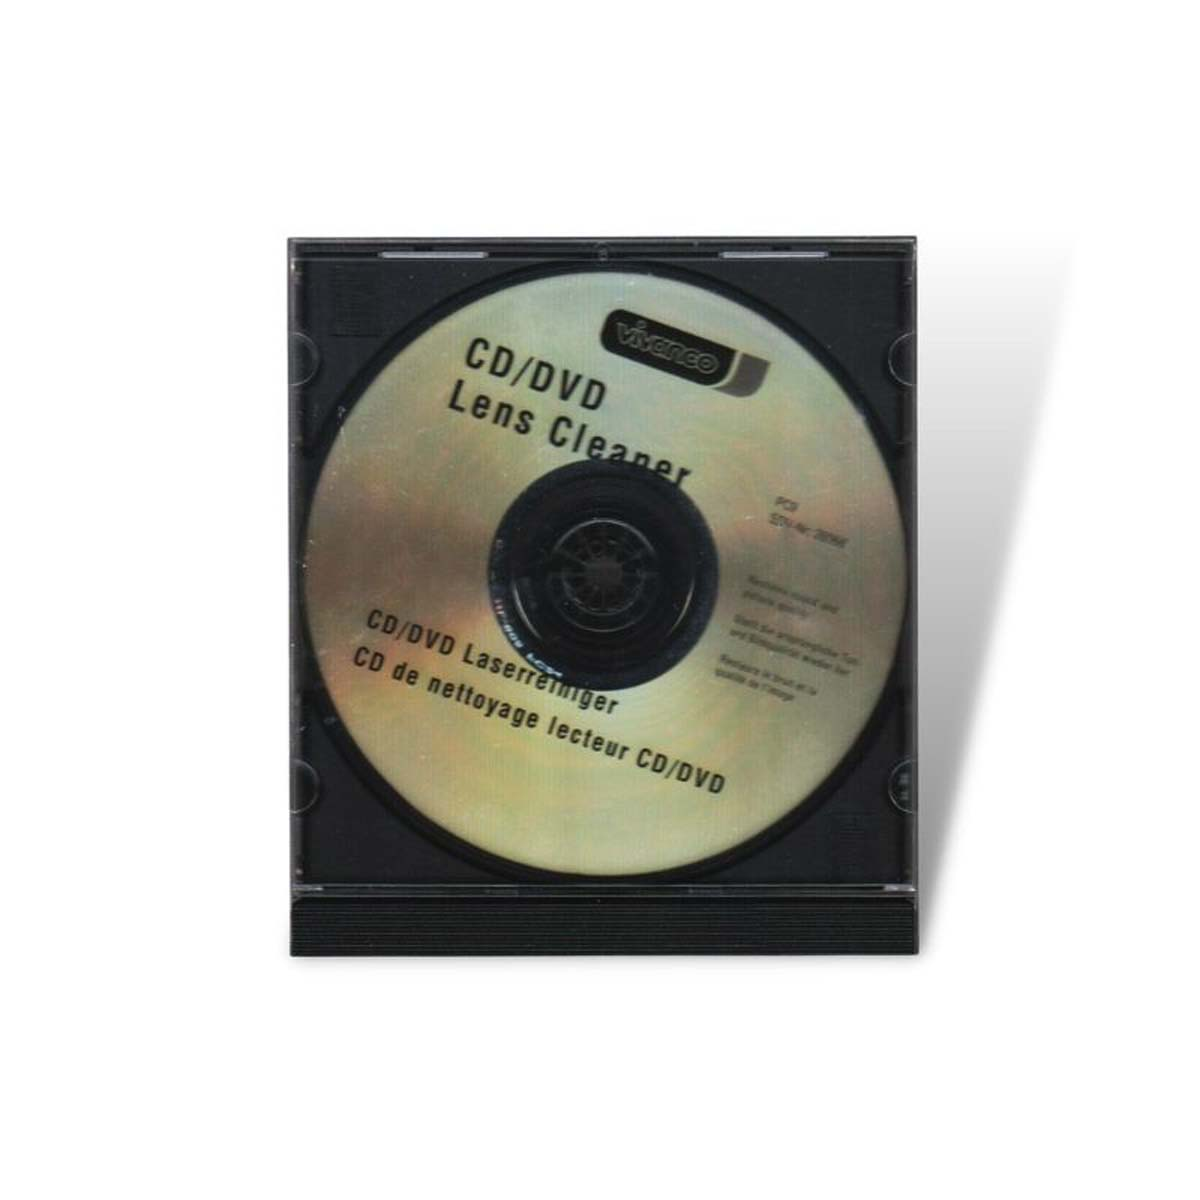 DVD, Transparent für PC, 39753 CD, Laserreiniger VIVANCO